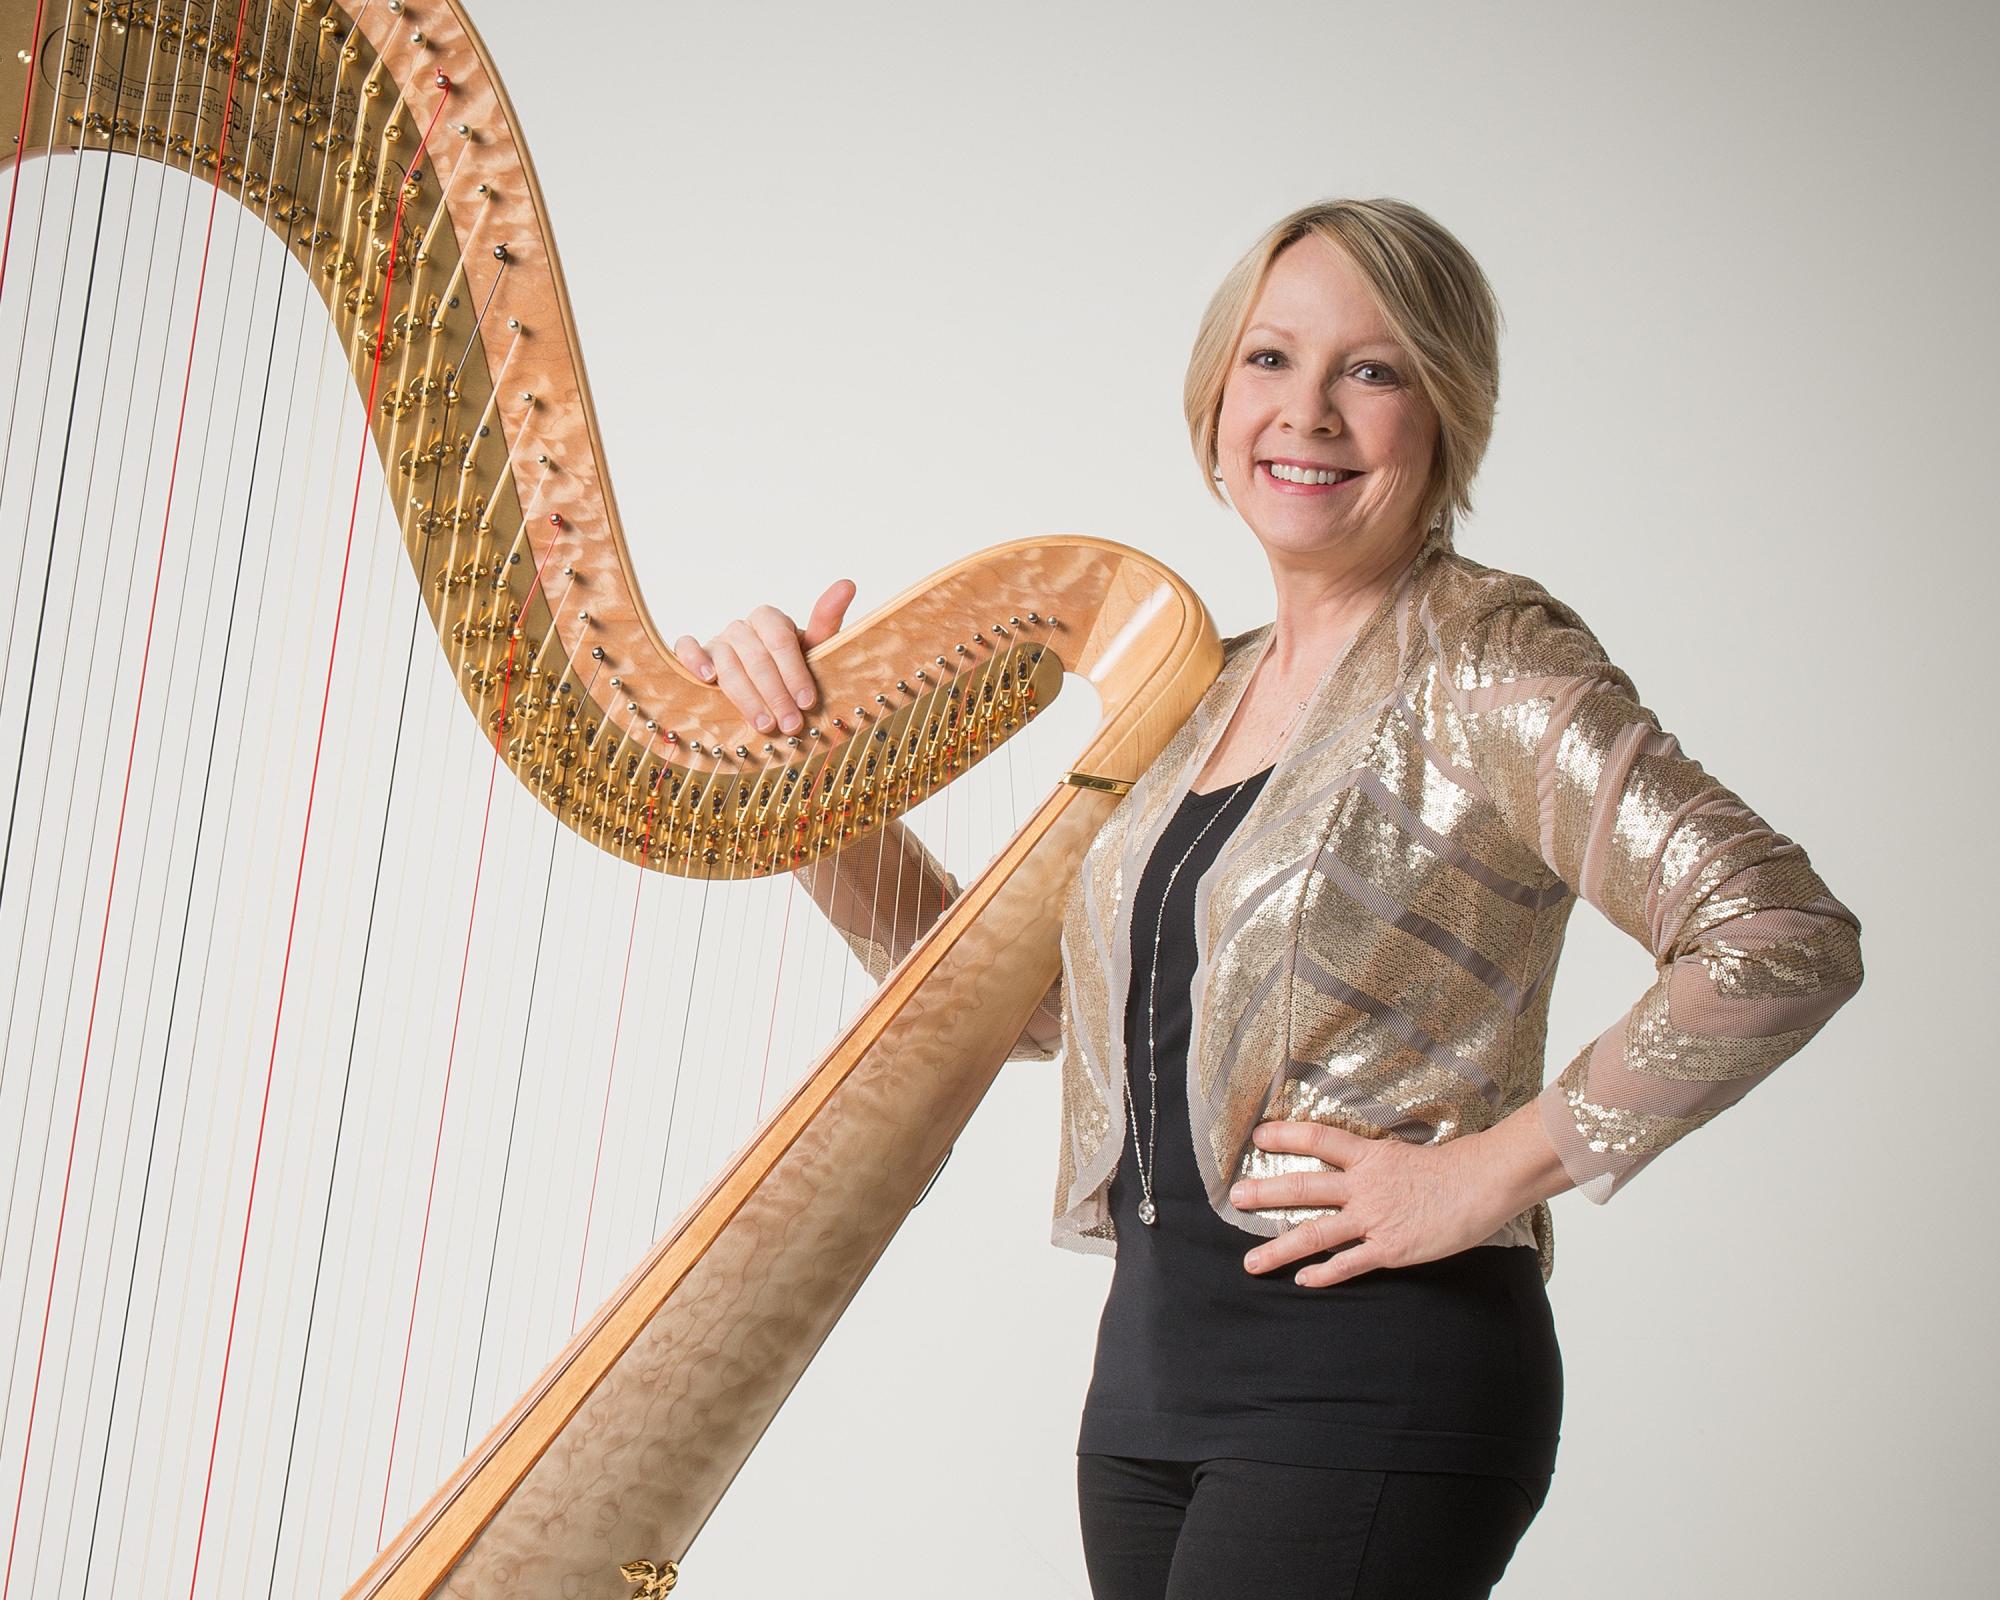 Delaine Leonard poses with harp